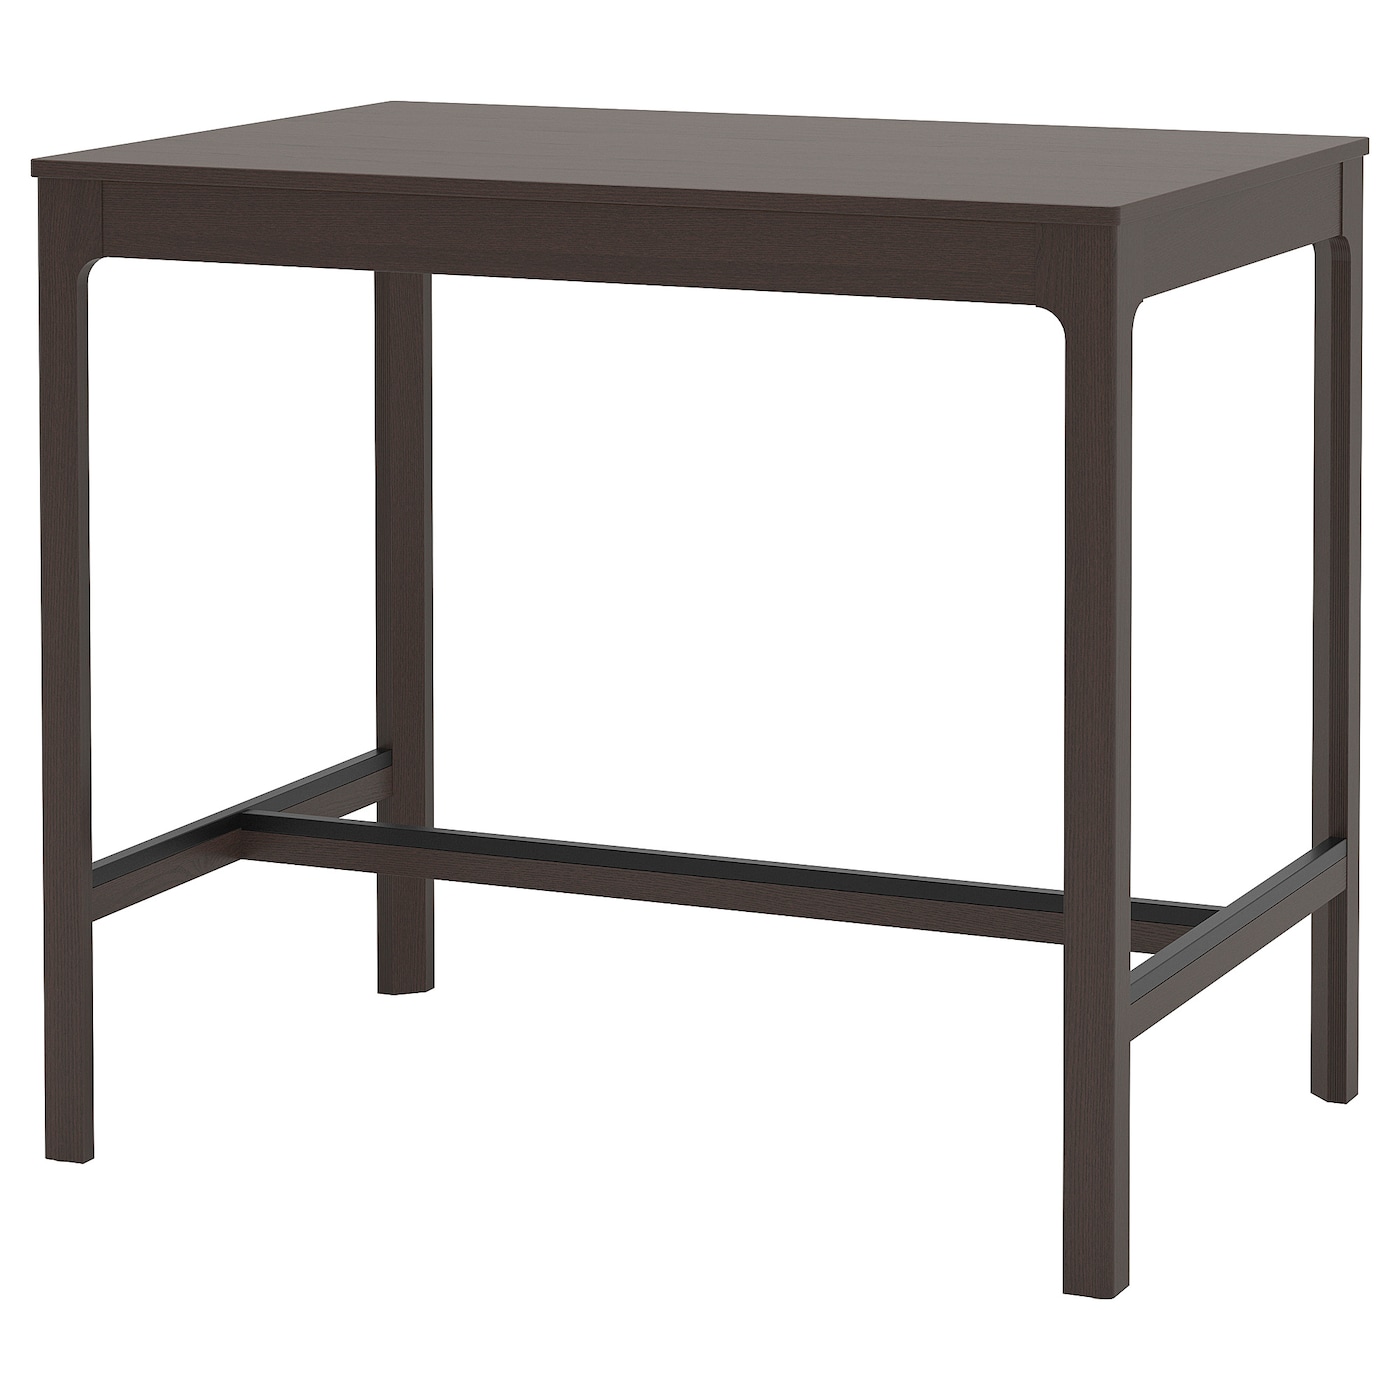 Барный стол - IKEA EKEDALEN/ЭКЕДАЛЕН ИКЕА  120x80x105 см,  темно-коричневый